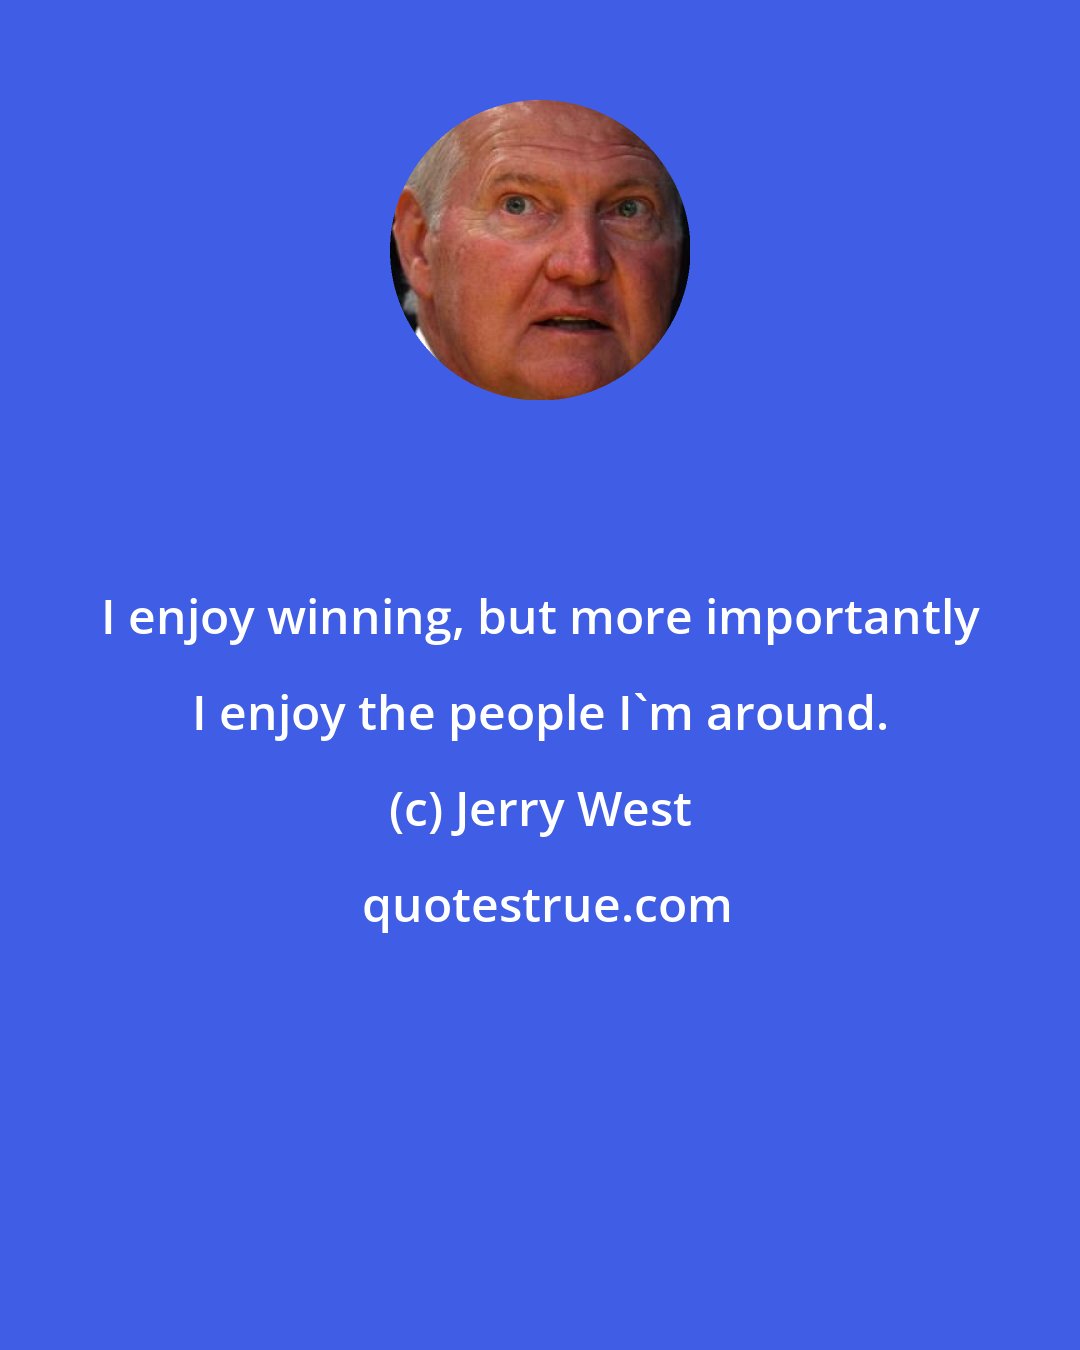 Jerry West: I enjoy winning, but more importantly I enjoy the people I'm around.